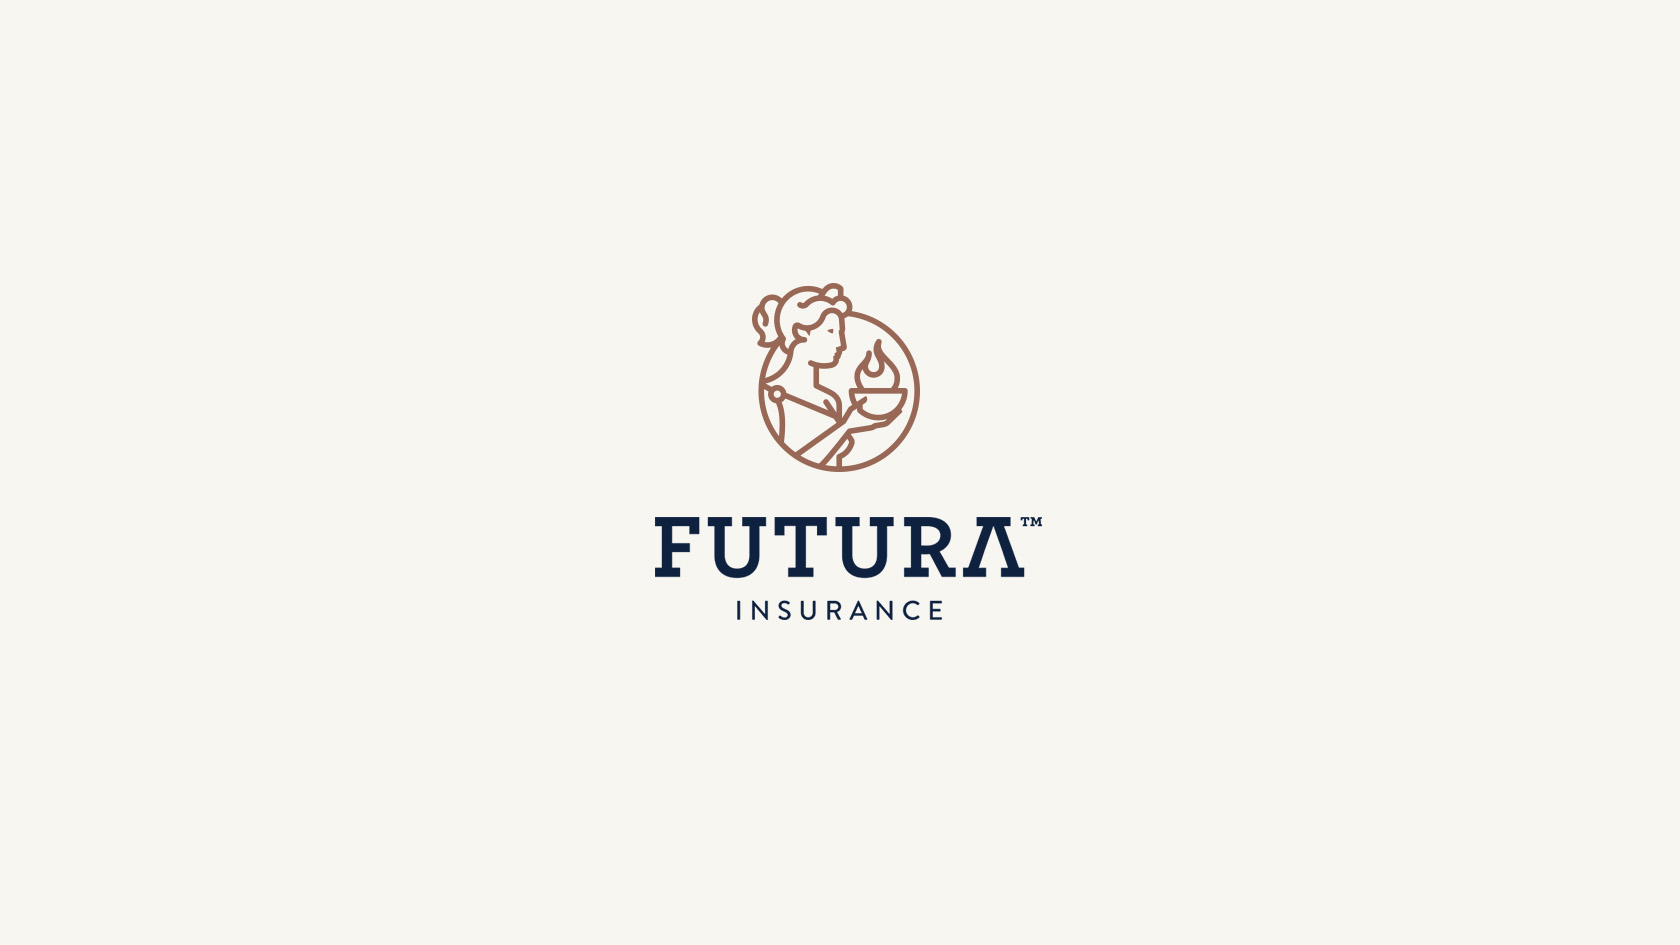 Diseño de identidad corporativa para compañía de seguros - Diseño de logotipo Futura insurance - Estudio de diseño Valencia Pixelarte